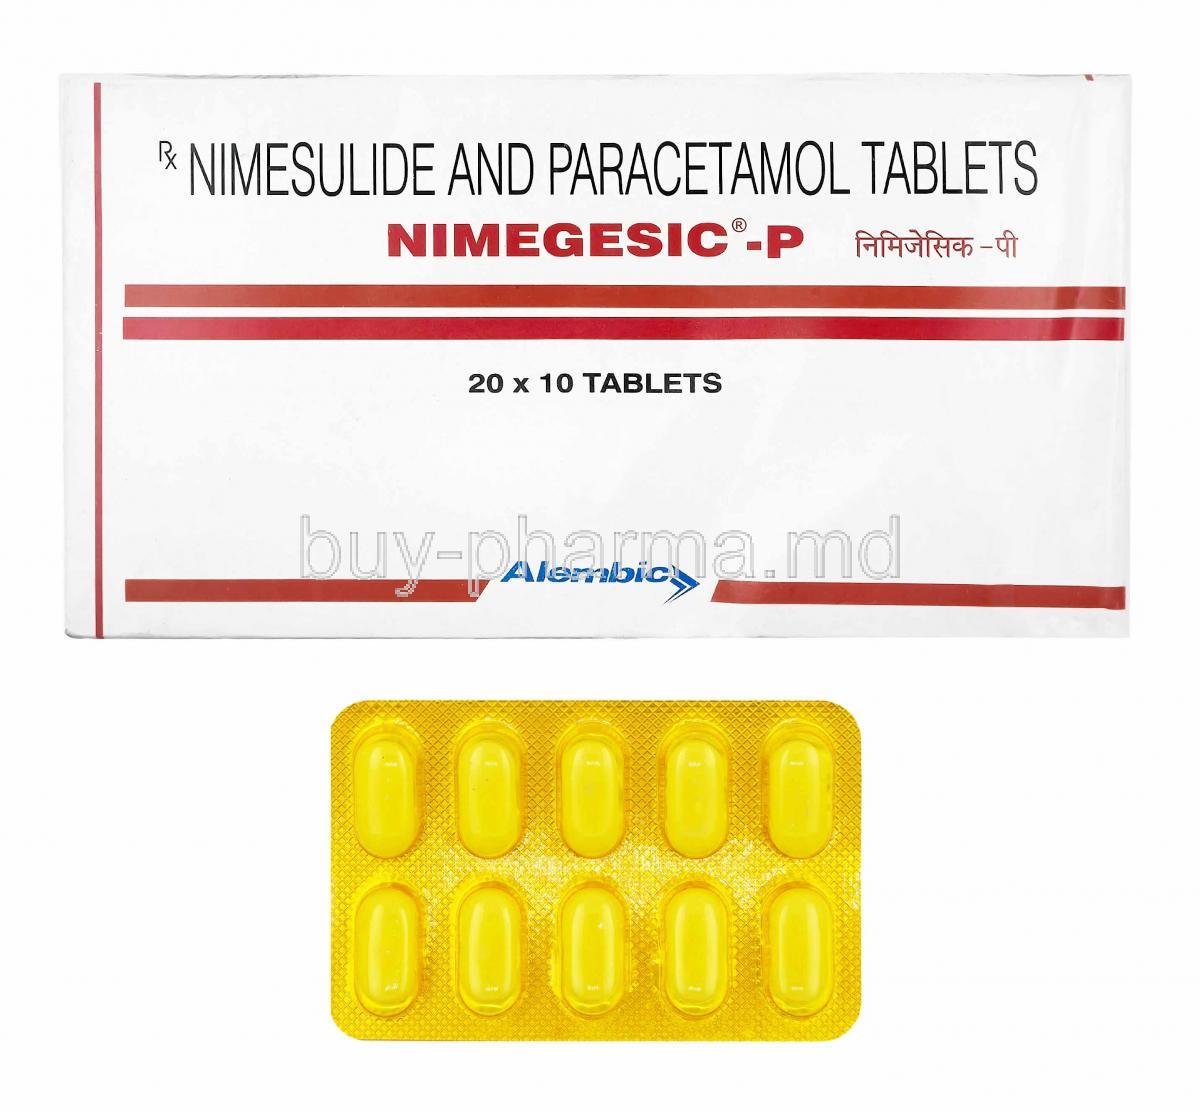 Nimegesic-P, Nimesulide and Paracetamol box and tablets